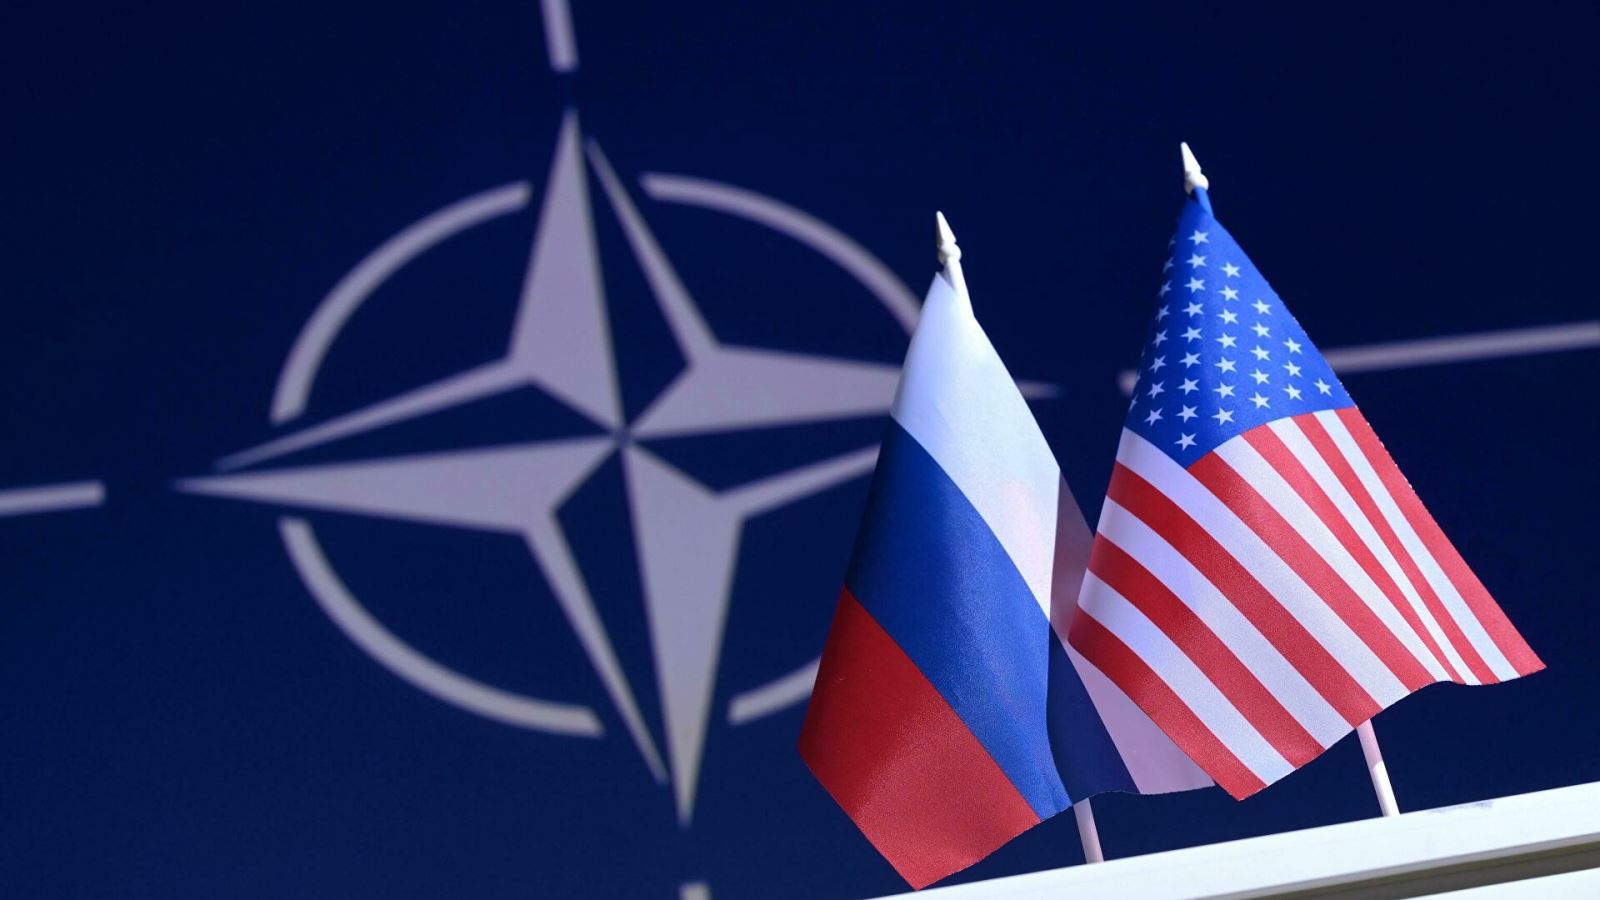 Hội đồng Nga-NATO về an ninh:
Hội đồng Nga-NATO về an ninh đã trở thành một nơi quan trọng để các quốc gia thảo luận và tìm kiếm những giải pháp xây dựng hòa bình và ổn định cho khu vực. Với sự tham gia của các chuyên gia và các nhà ngoại giao tài năng, Hội đồng đã đem lại nhiều thành tựu đáng kể và giúp tăng cường sự hiểu biết và tin tưởng giữa các quốc gia. Hãy cùng xem hình ảnh về Hội đồng Nga-NATO về an ninh và tìm hiểu về vai trò quan trọng của nó.